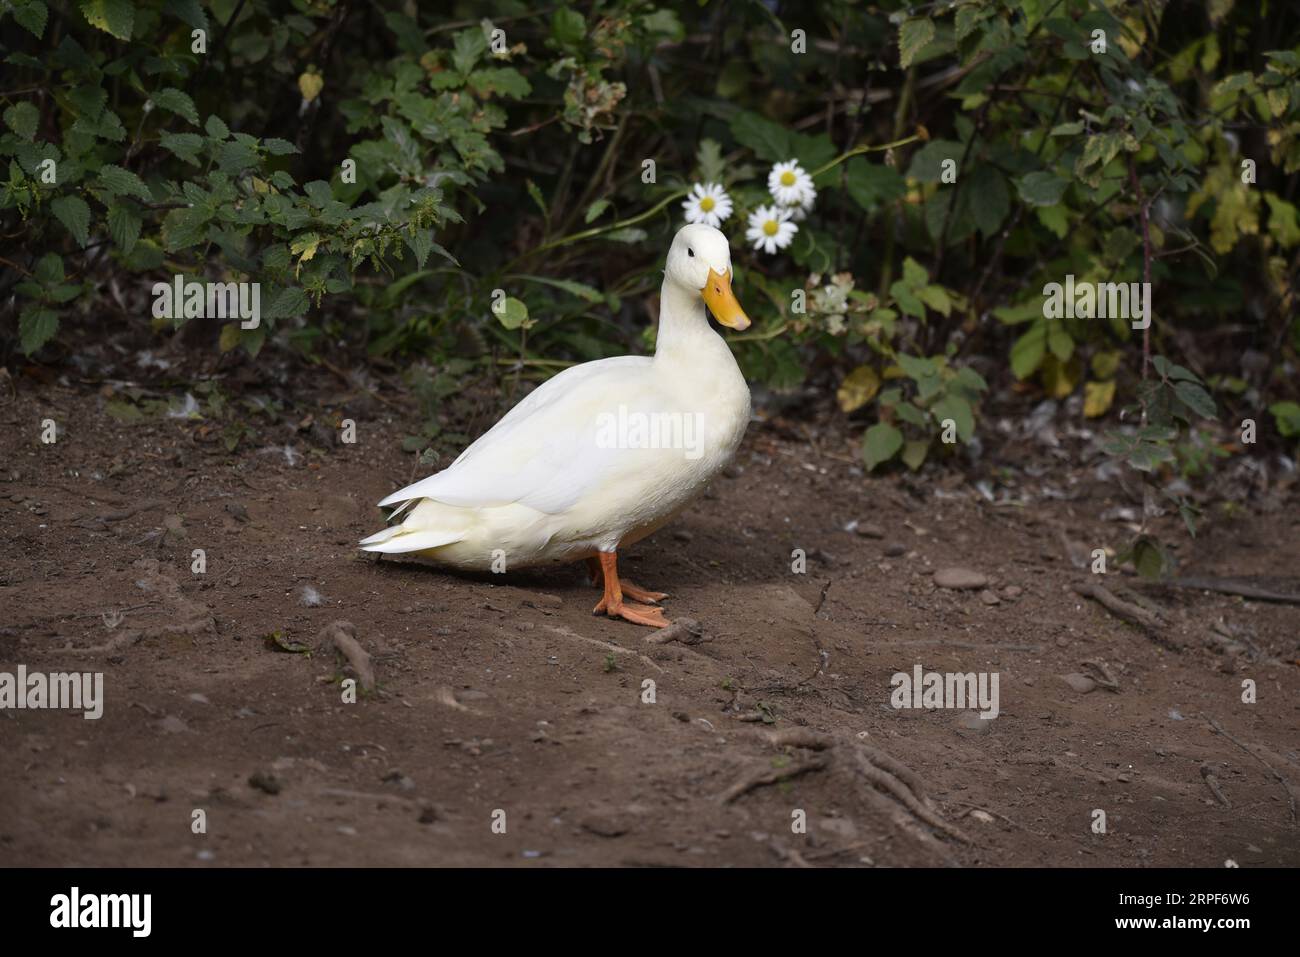 White Domestic Duck (Pekin Duck) in piedi su una sponda fangosa a destra, Head Turned to camera, su uno sfondo verde fogliame, scattato nel Regno Unito Foto Stock